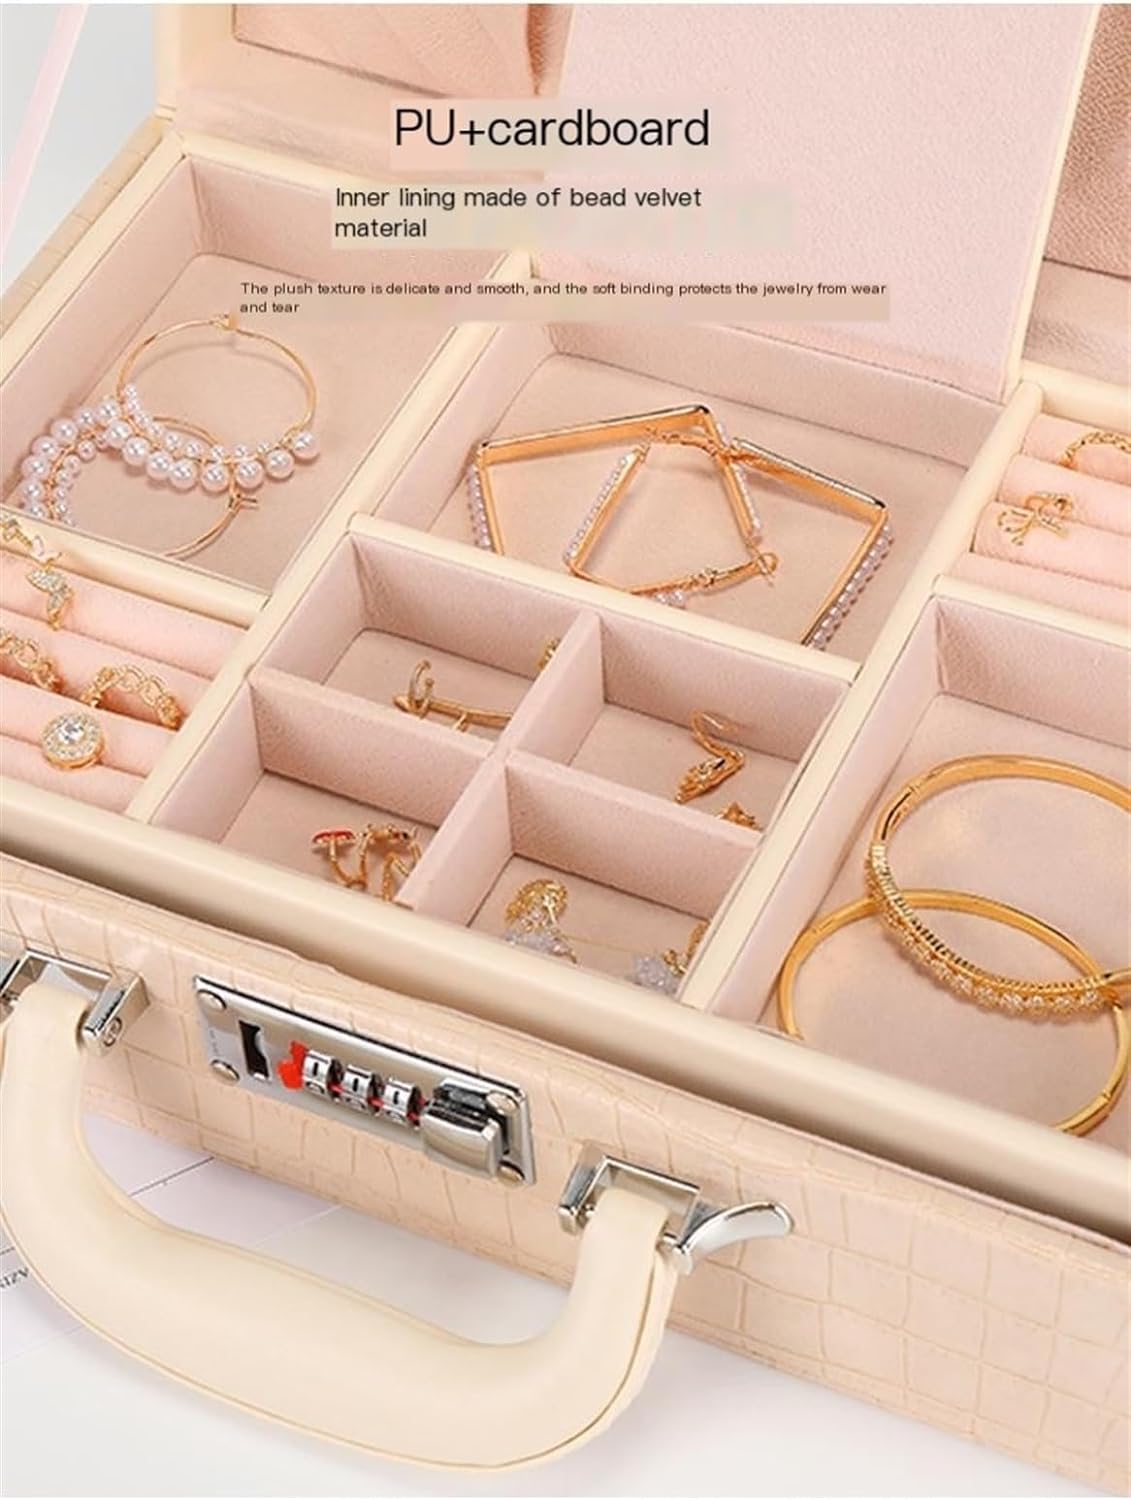 Jewelry Organizer Case - XS85